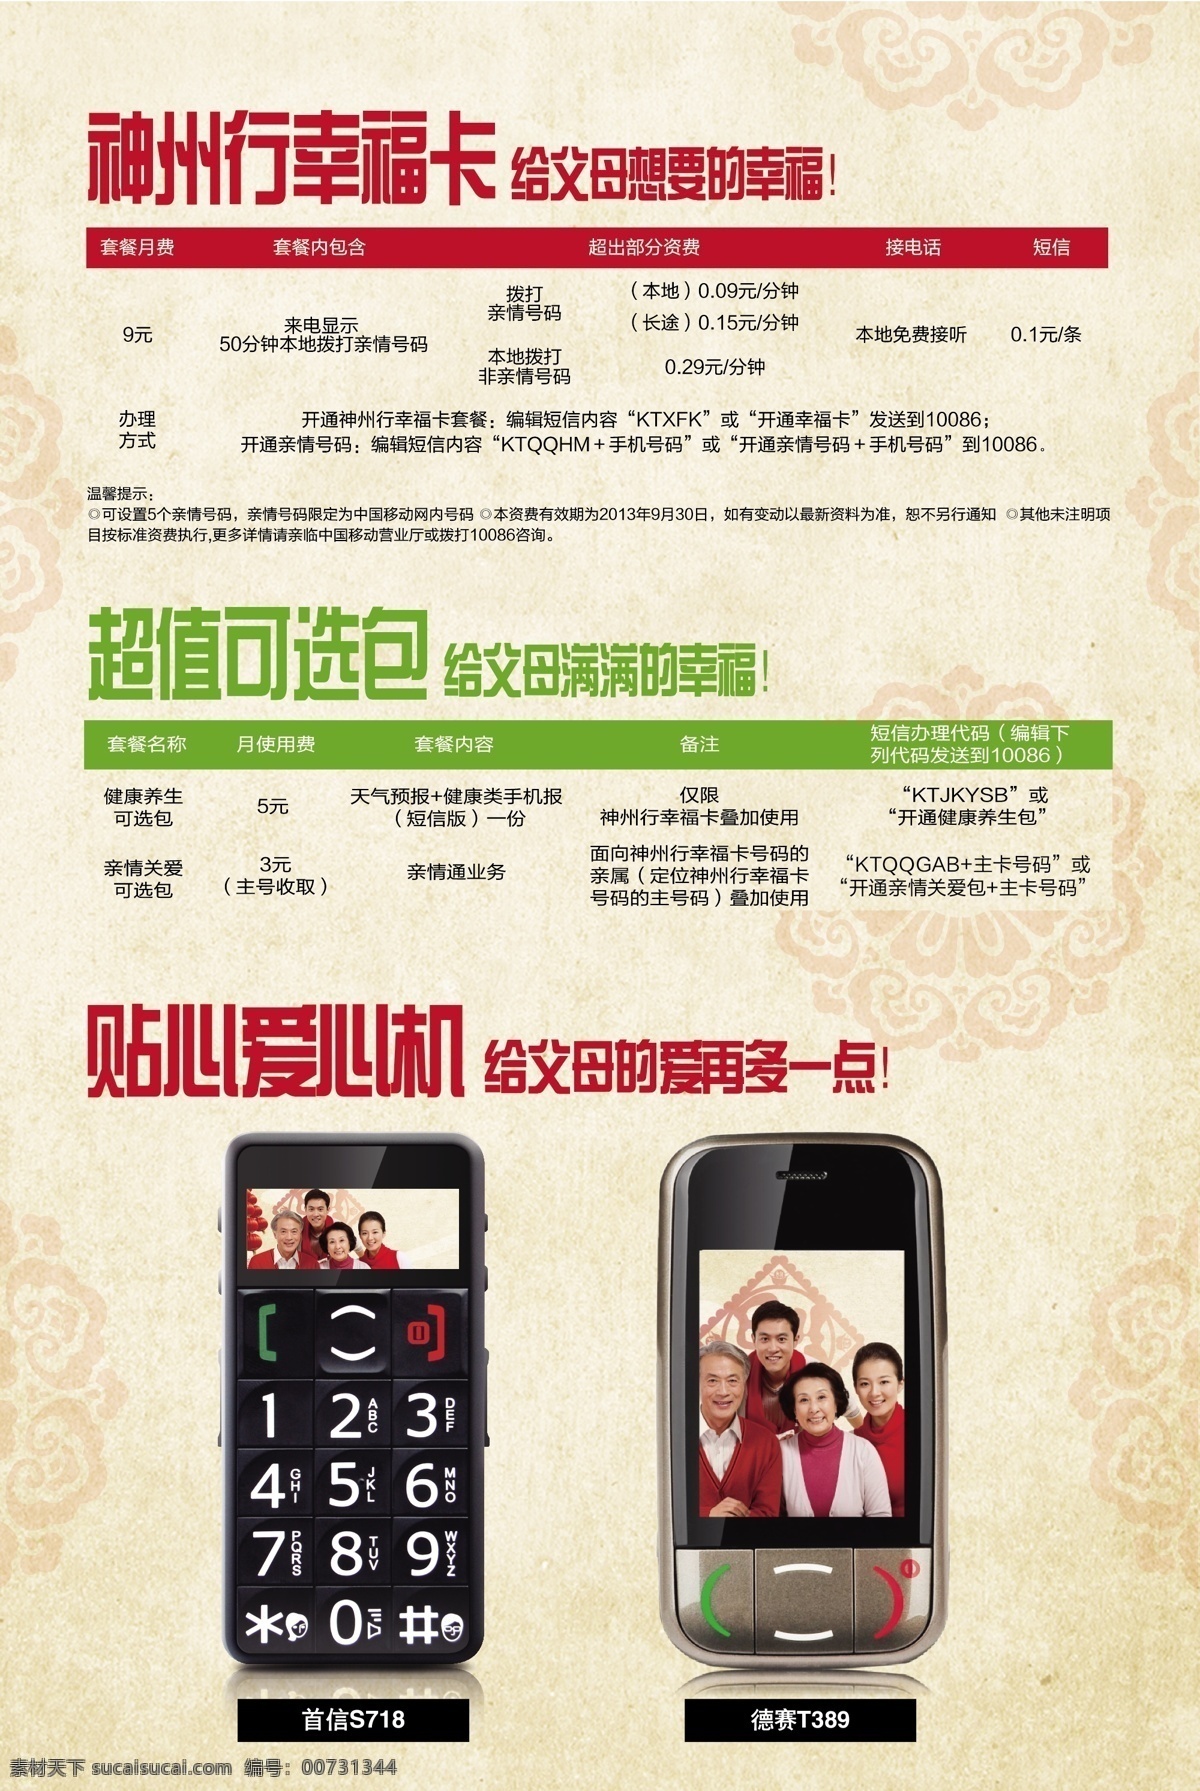 神州行幸福卡 移动 神州行 幸福卡 手机 短信 dm宣传单 矢量 中国移动 宣传 印刷品